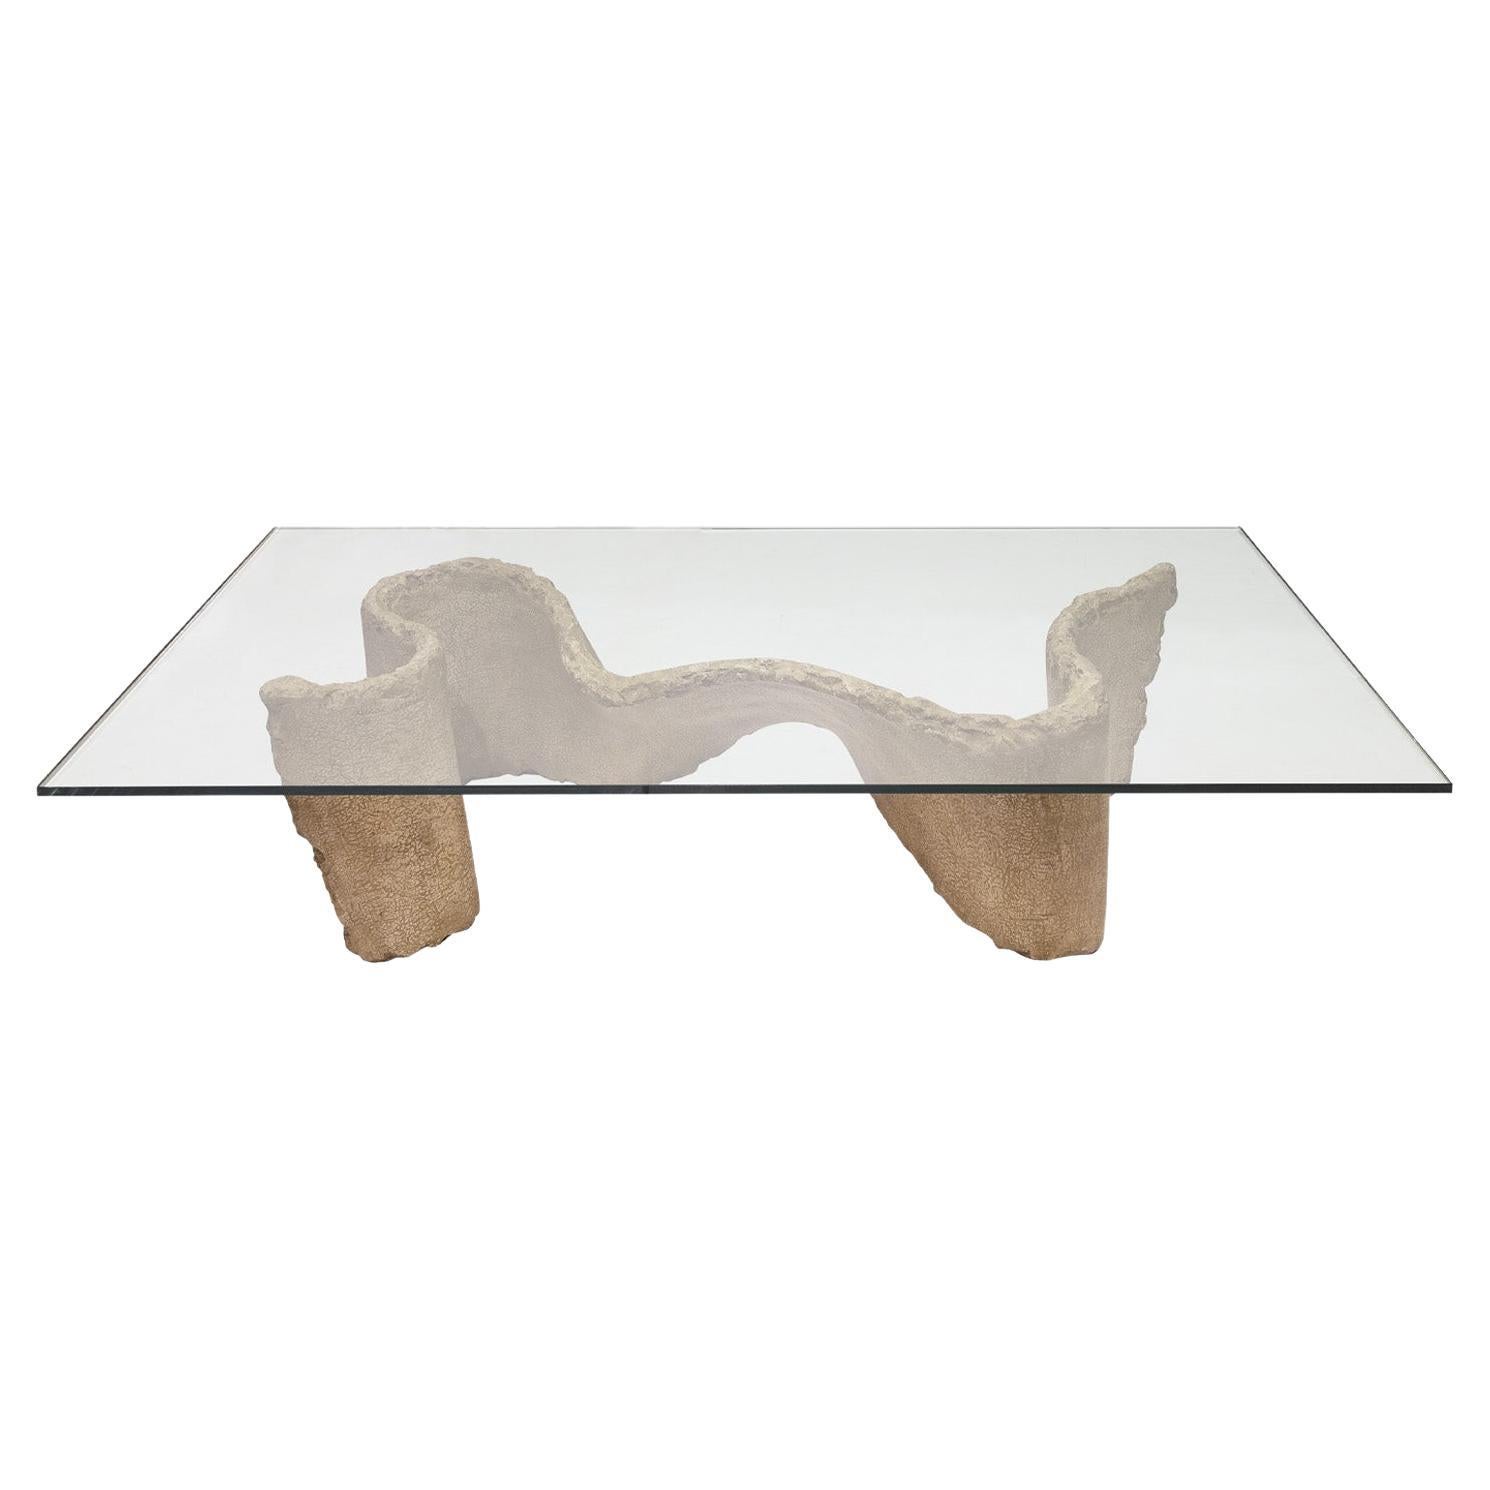 Table basse sculpturale Silas Seandel avec plateau en verre des années 1970 (signée)